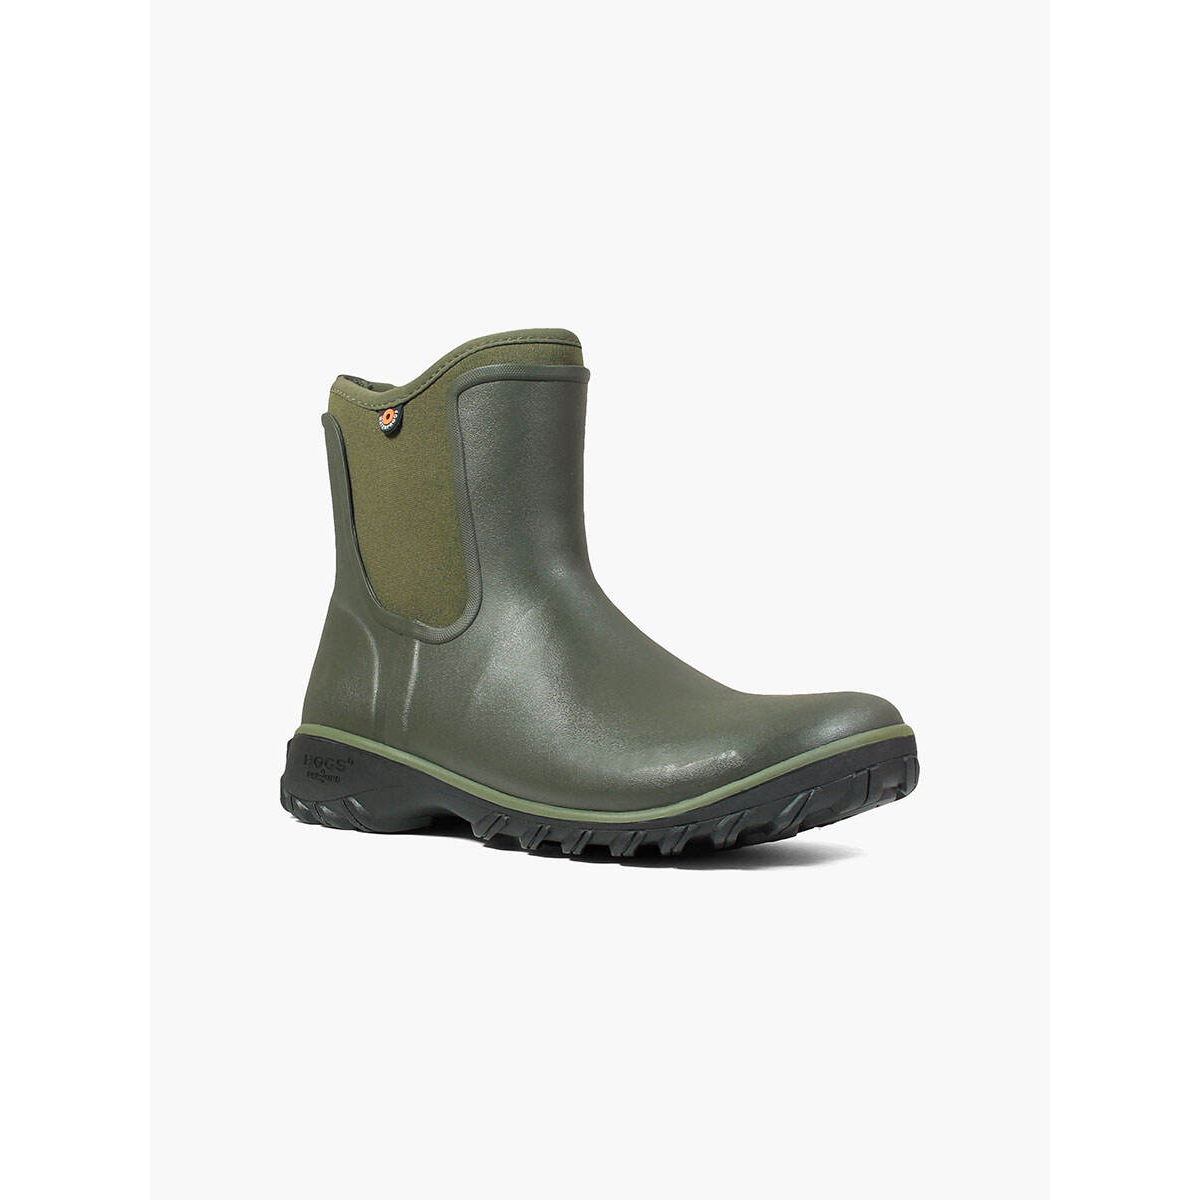 BOGS Women's Sauvie Slip On Waterproof Rain Boots Sage - 72203-306 SAGE - SAGE, 6